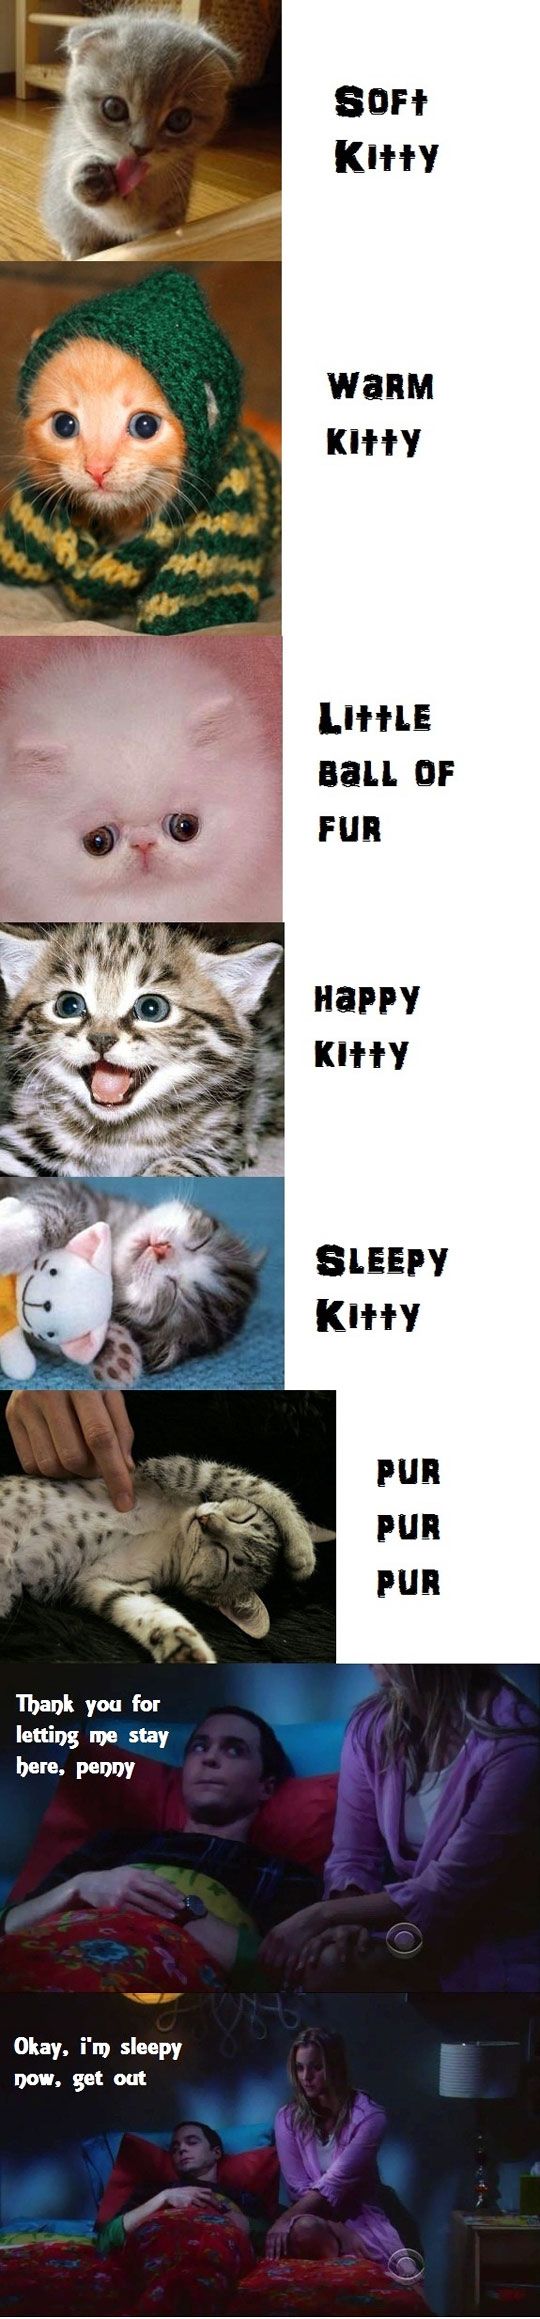 Soft kitty, warm kitty...